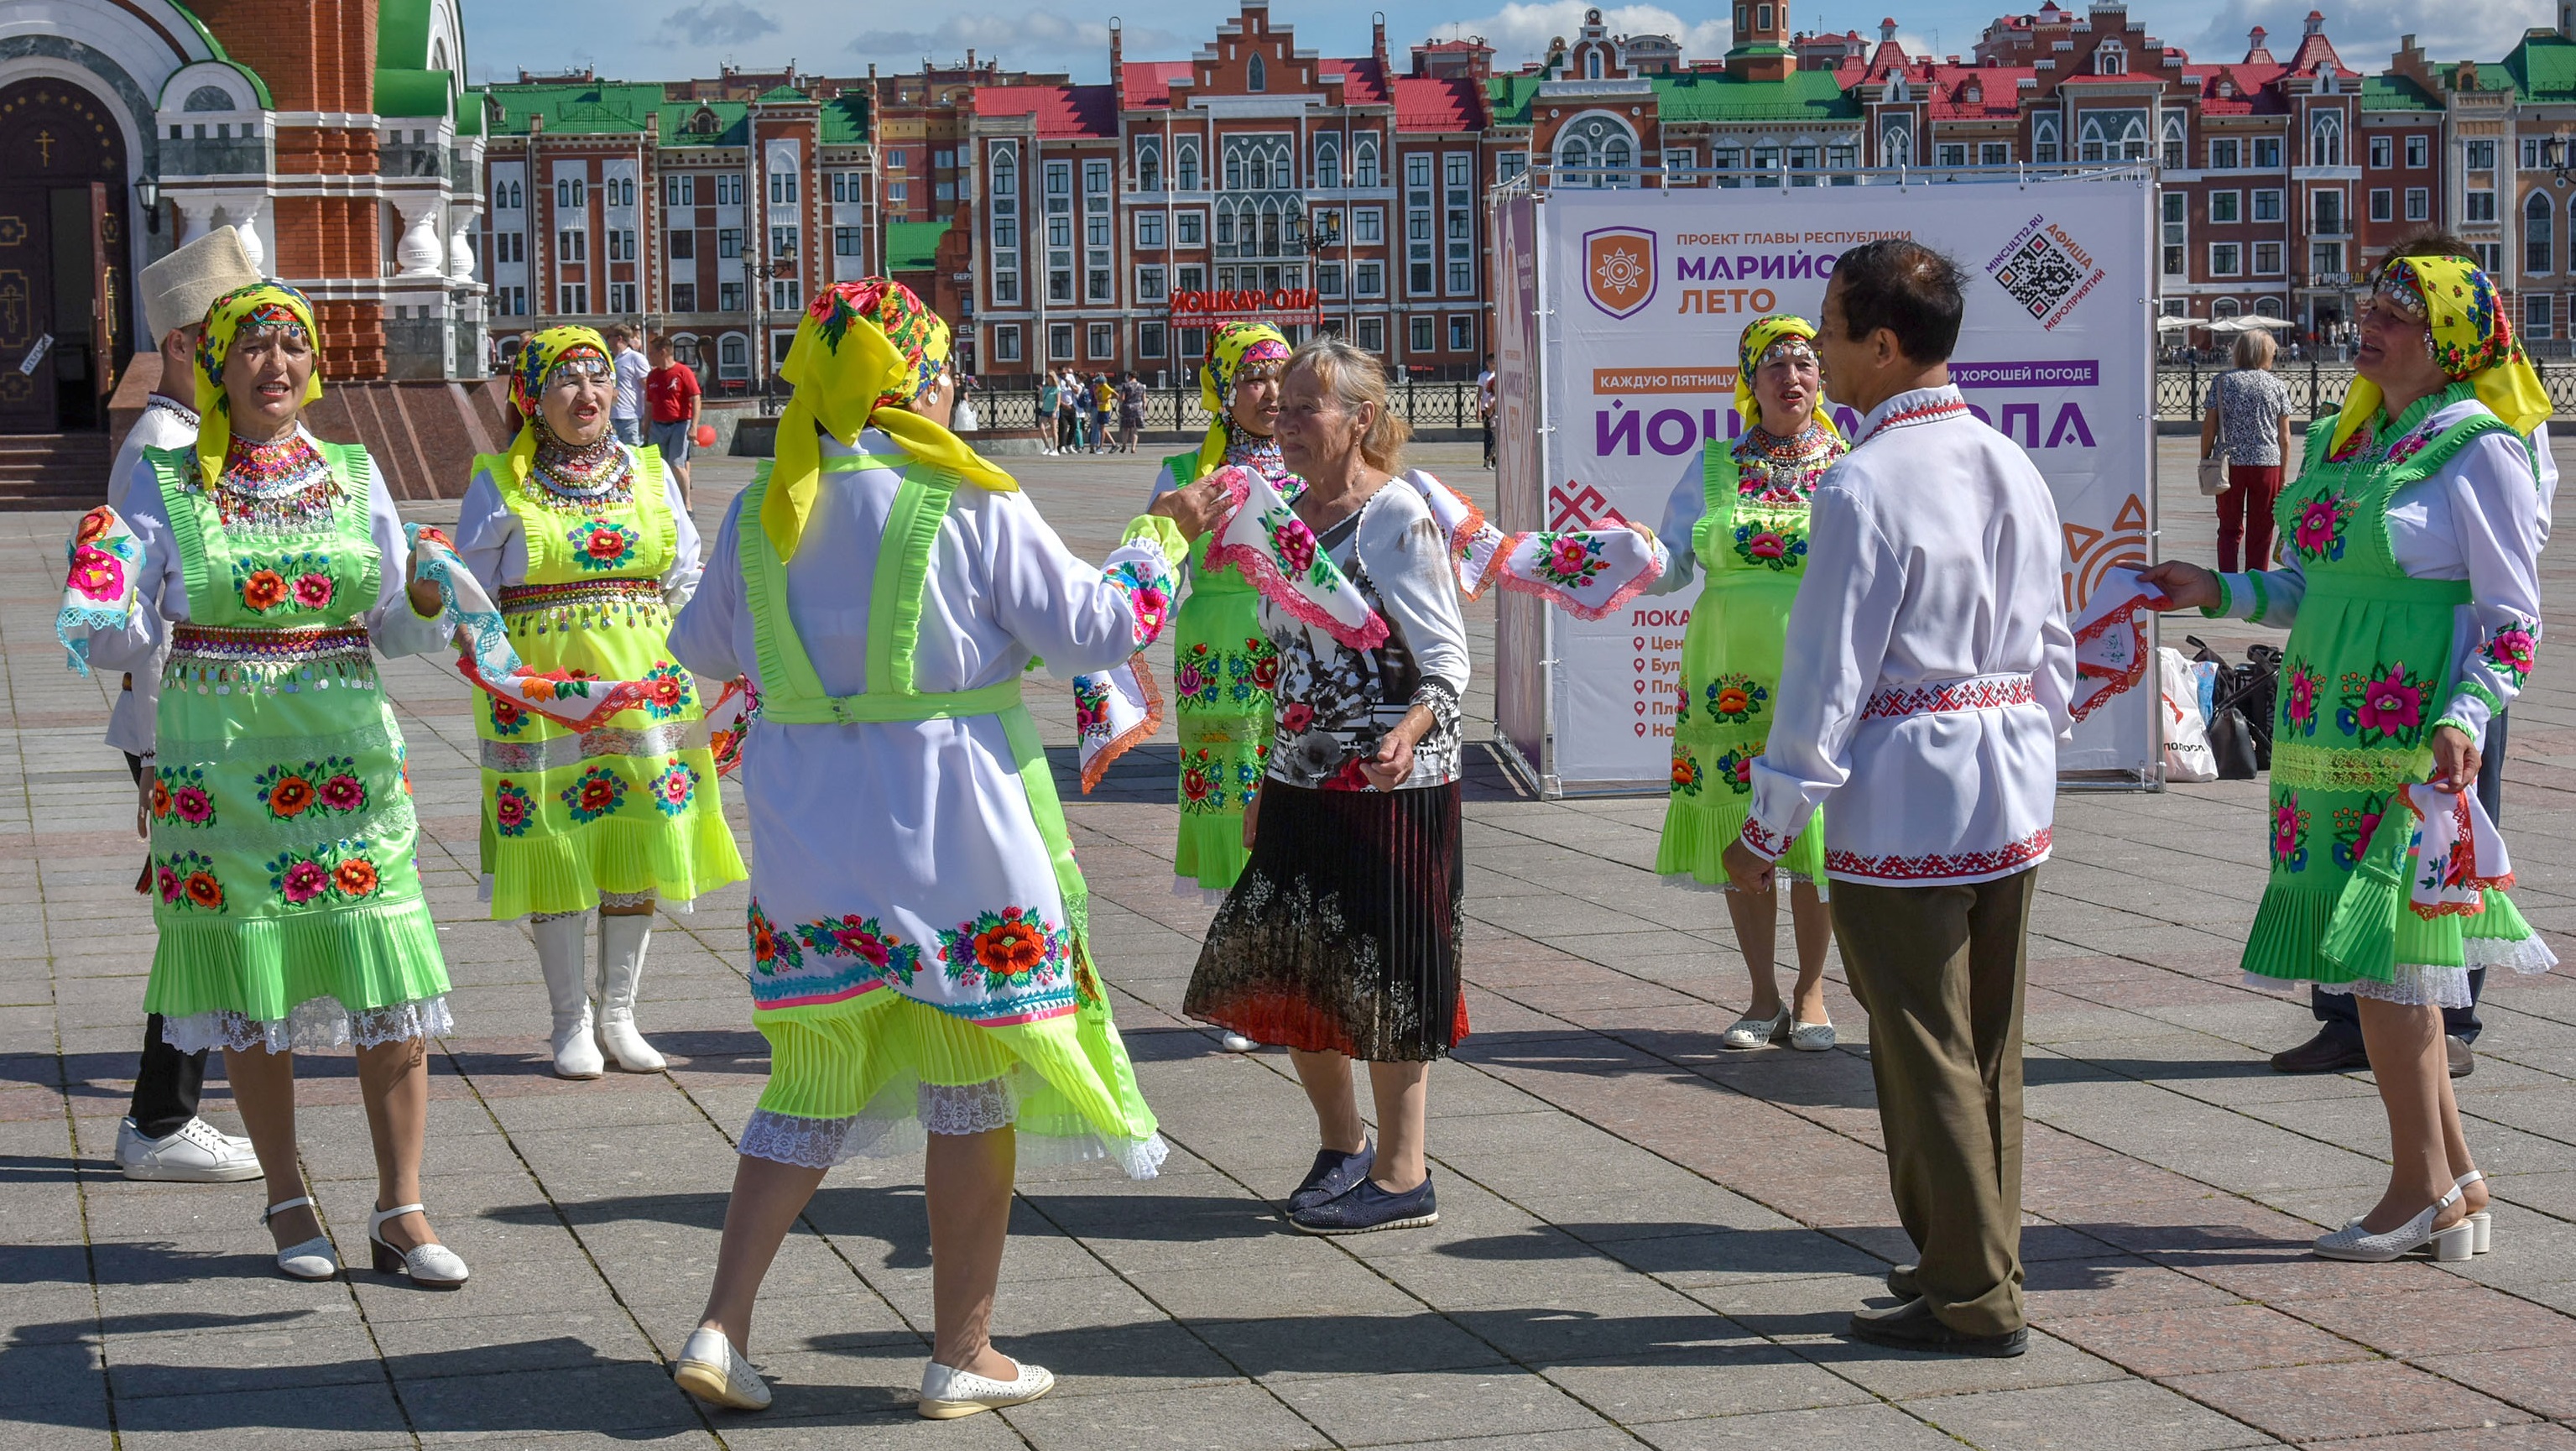 Афиша мероприятий фестиваля "Марийское лето" на 19 августа